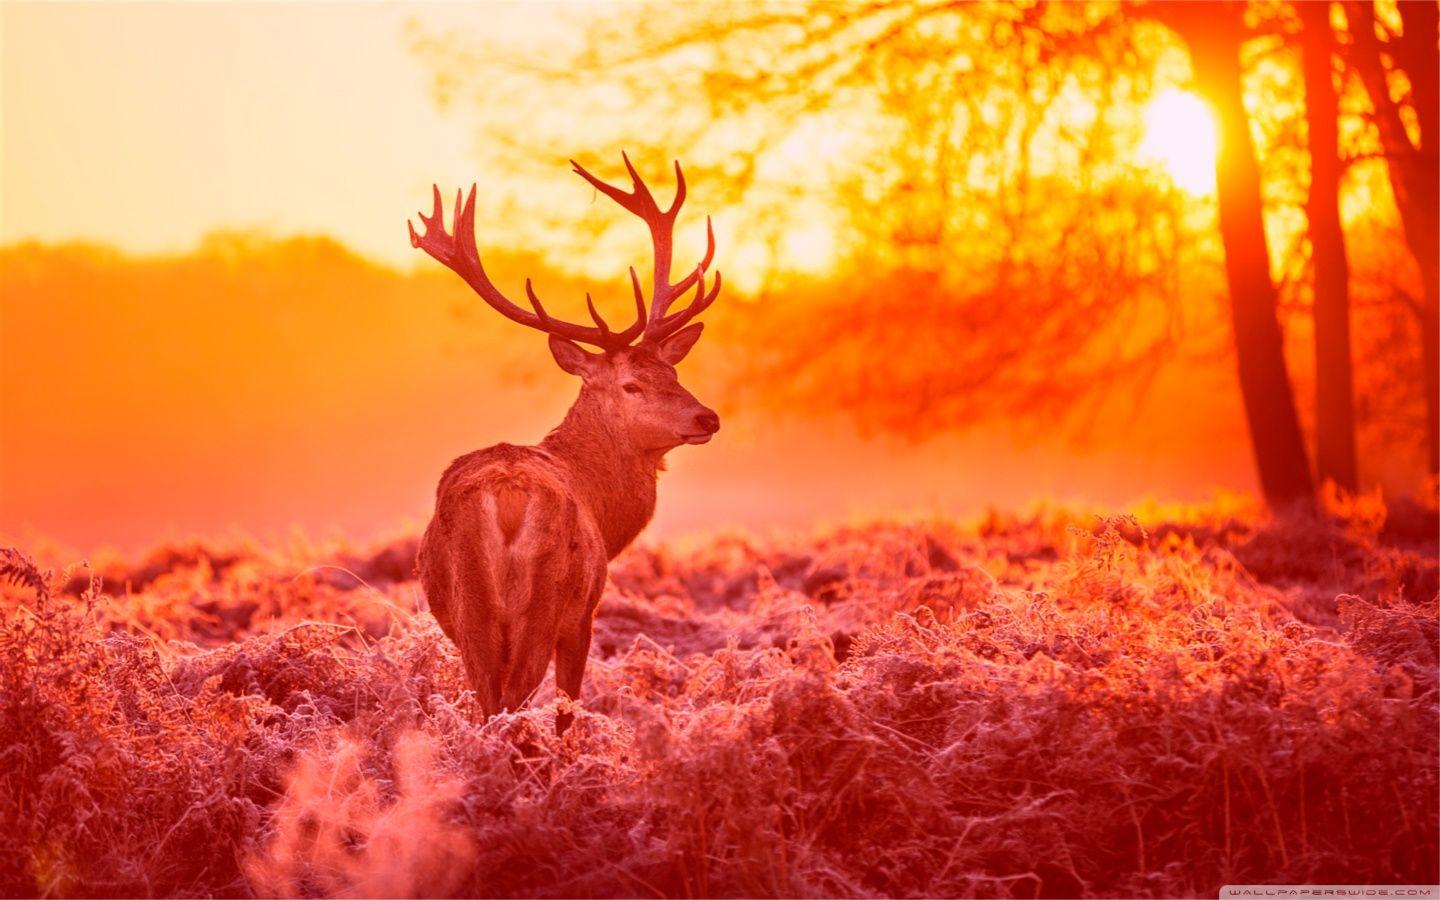 Deer Under The Sunset Warm Forest Grass ❤ 4K HD Desktop Wallpaper